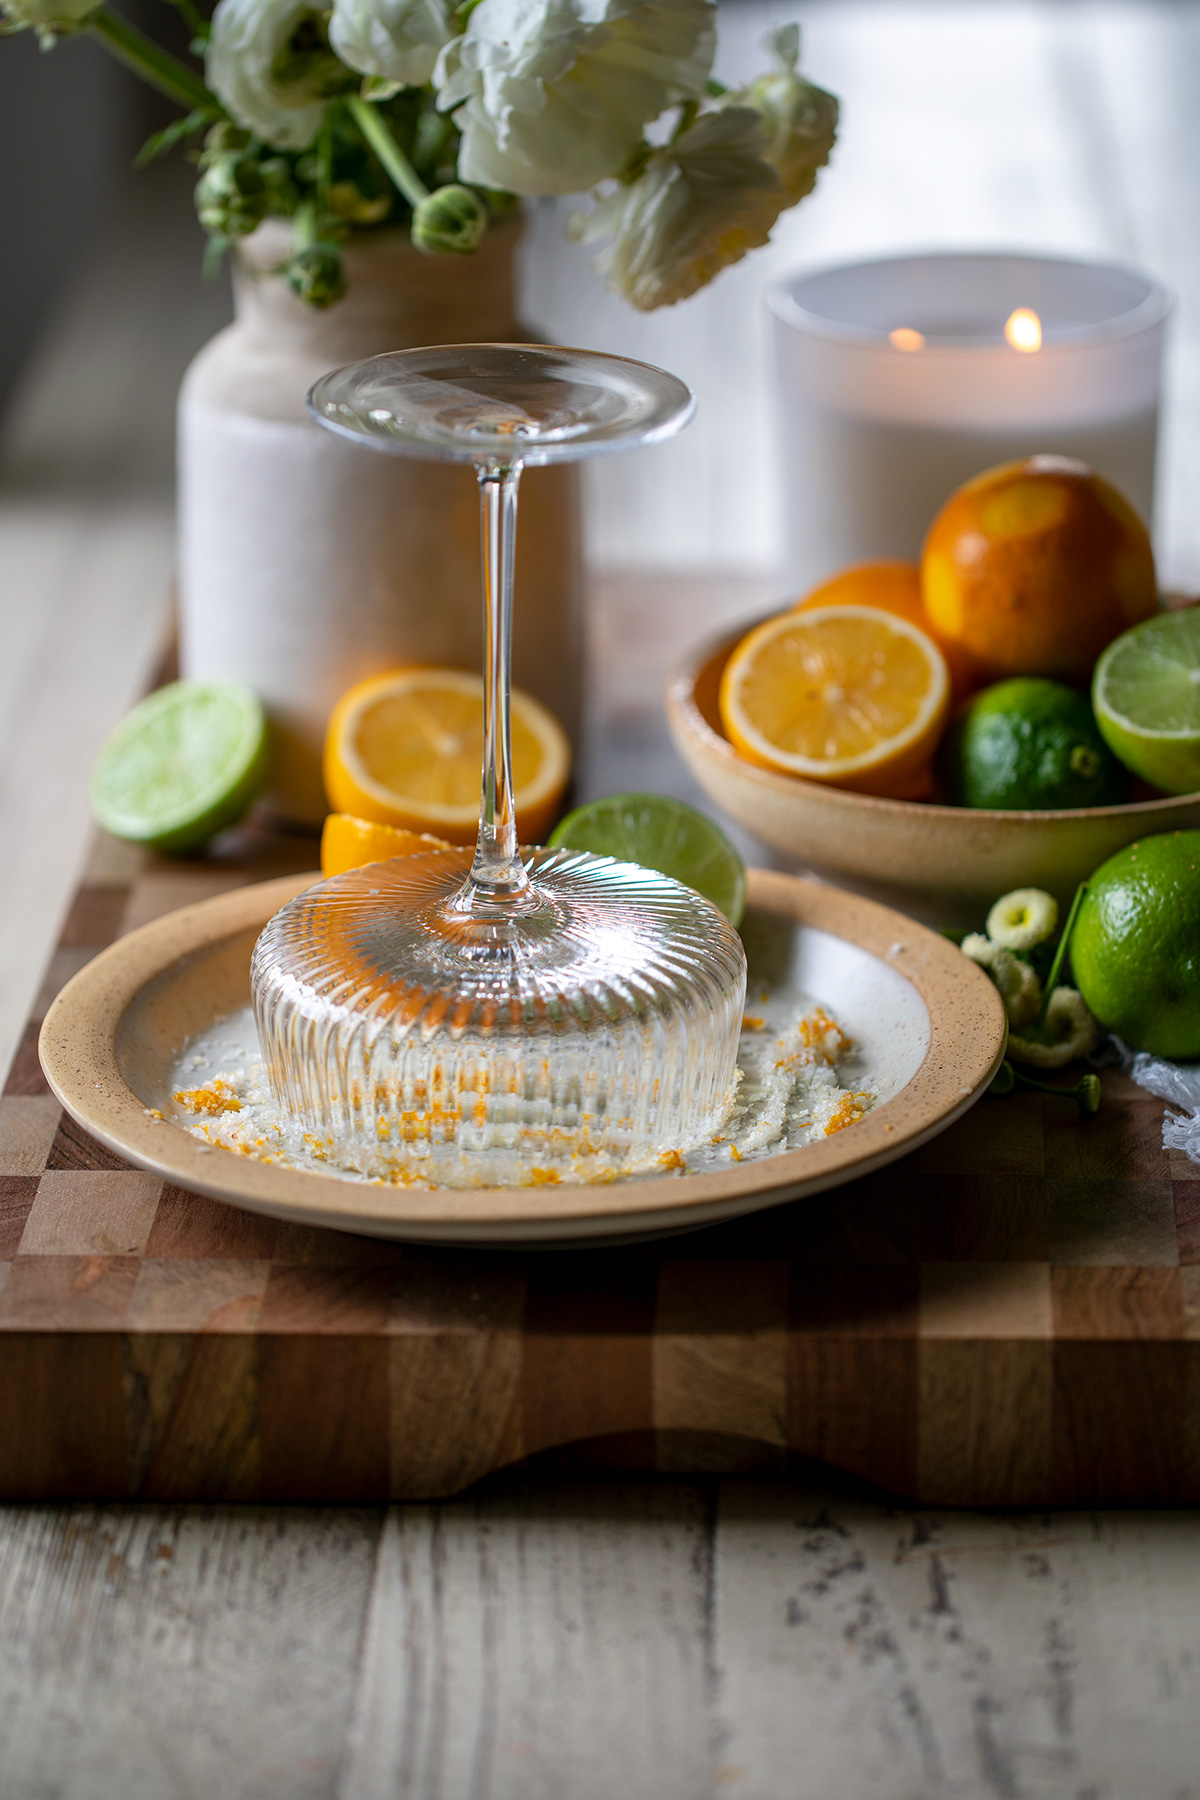 How to Make a Limoncello Margarita